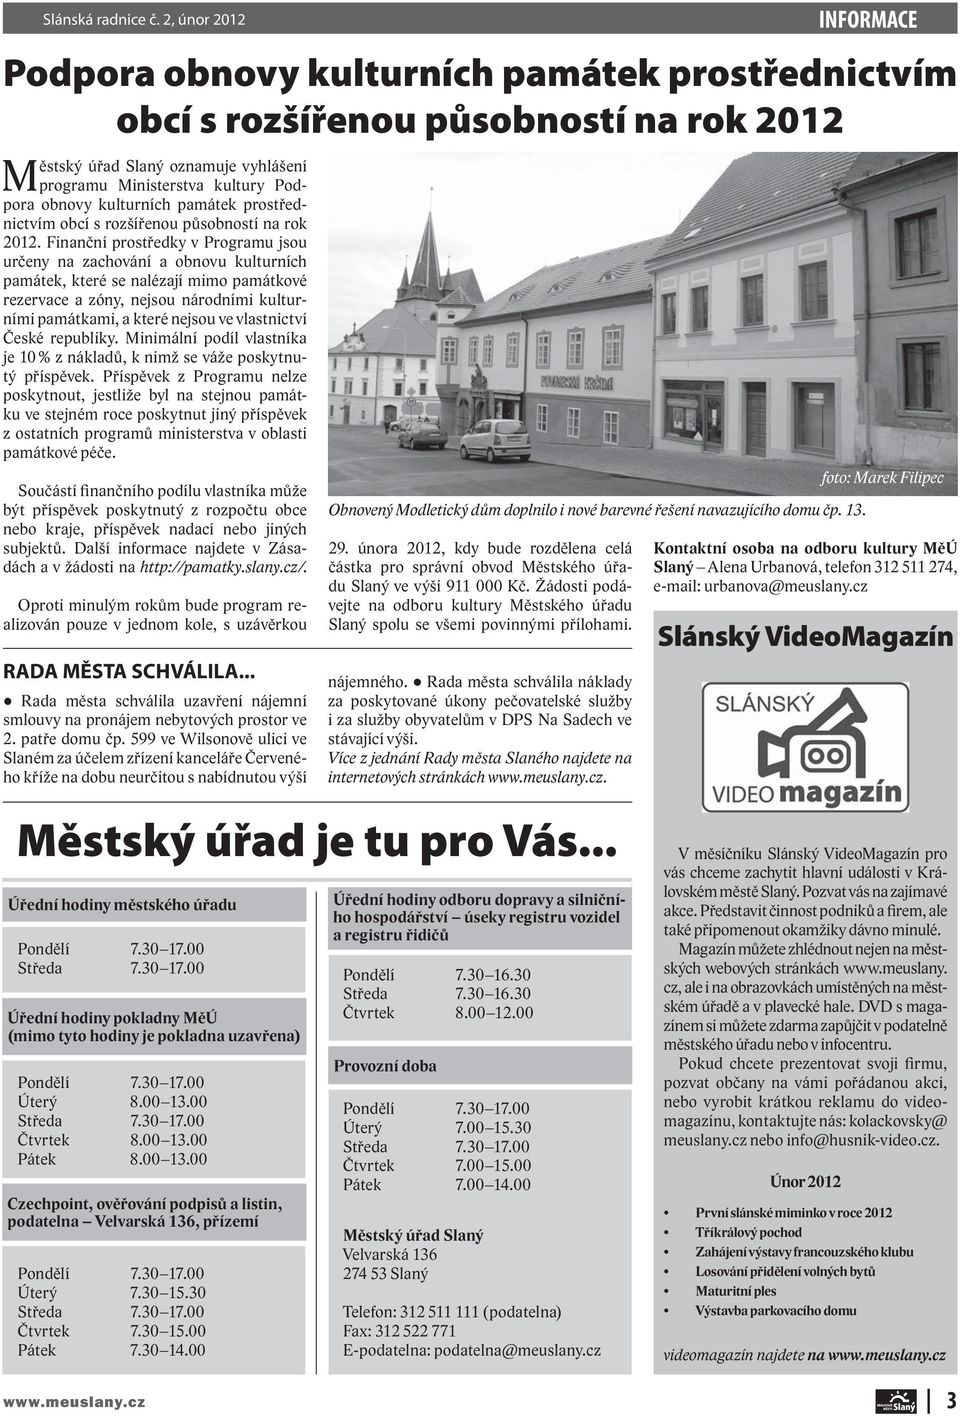 památek prostřednictvím obcí s rozšířenou působností na rok 2012.